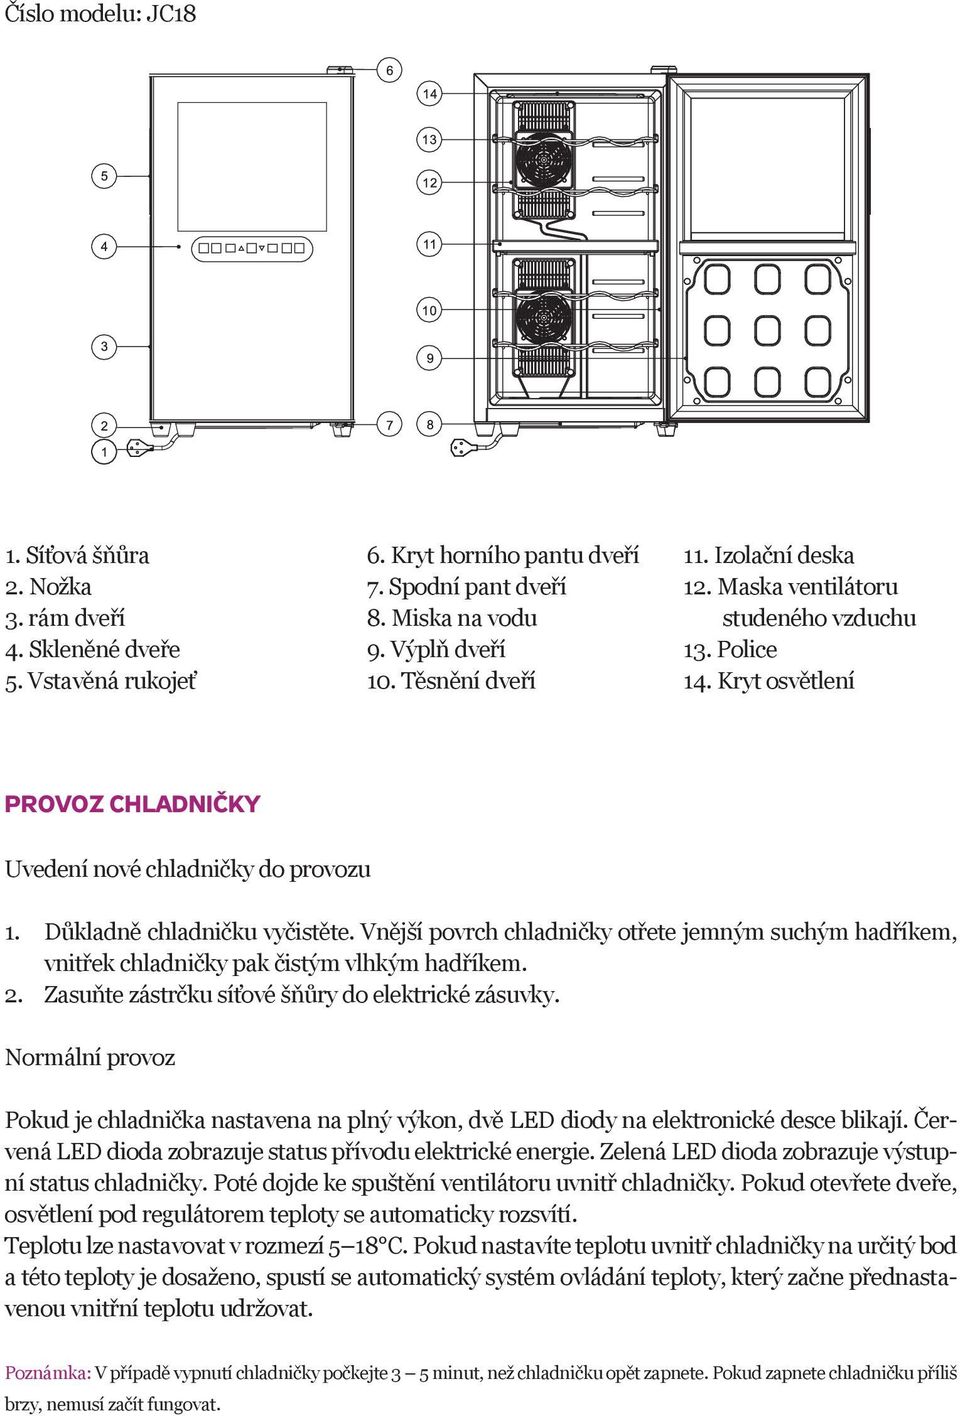 Vnější povrch chladničky otřete jemným suchým hadříkem, vnitřek chladničky pak čistým vlhkým hadříkem. 2. Zasuňte zástrčku síťové šňůry do elektrické zásuvky.